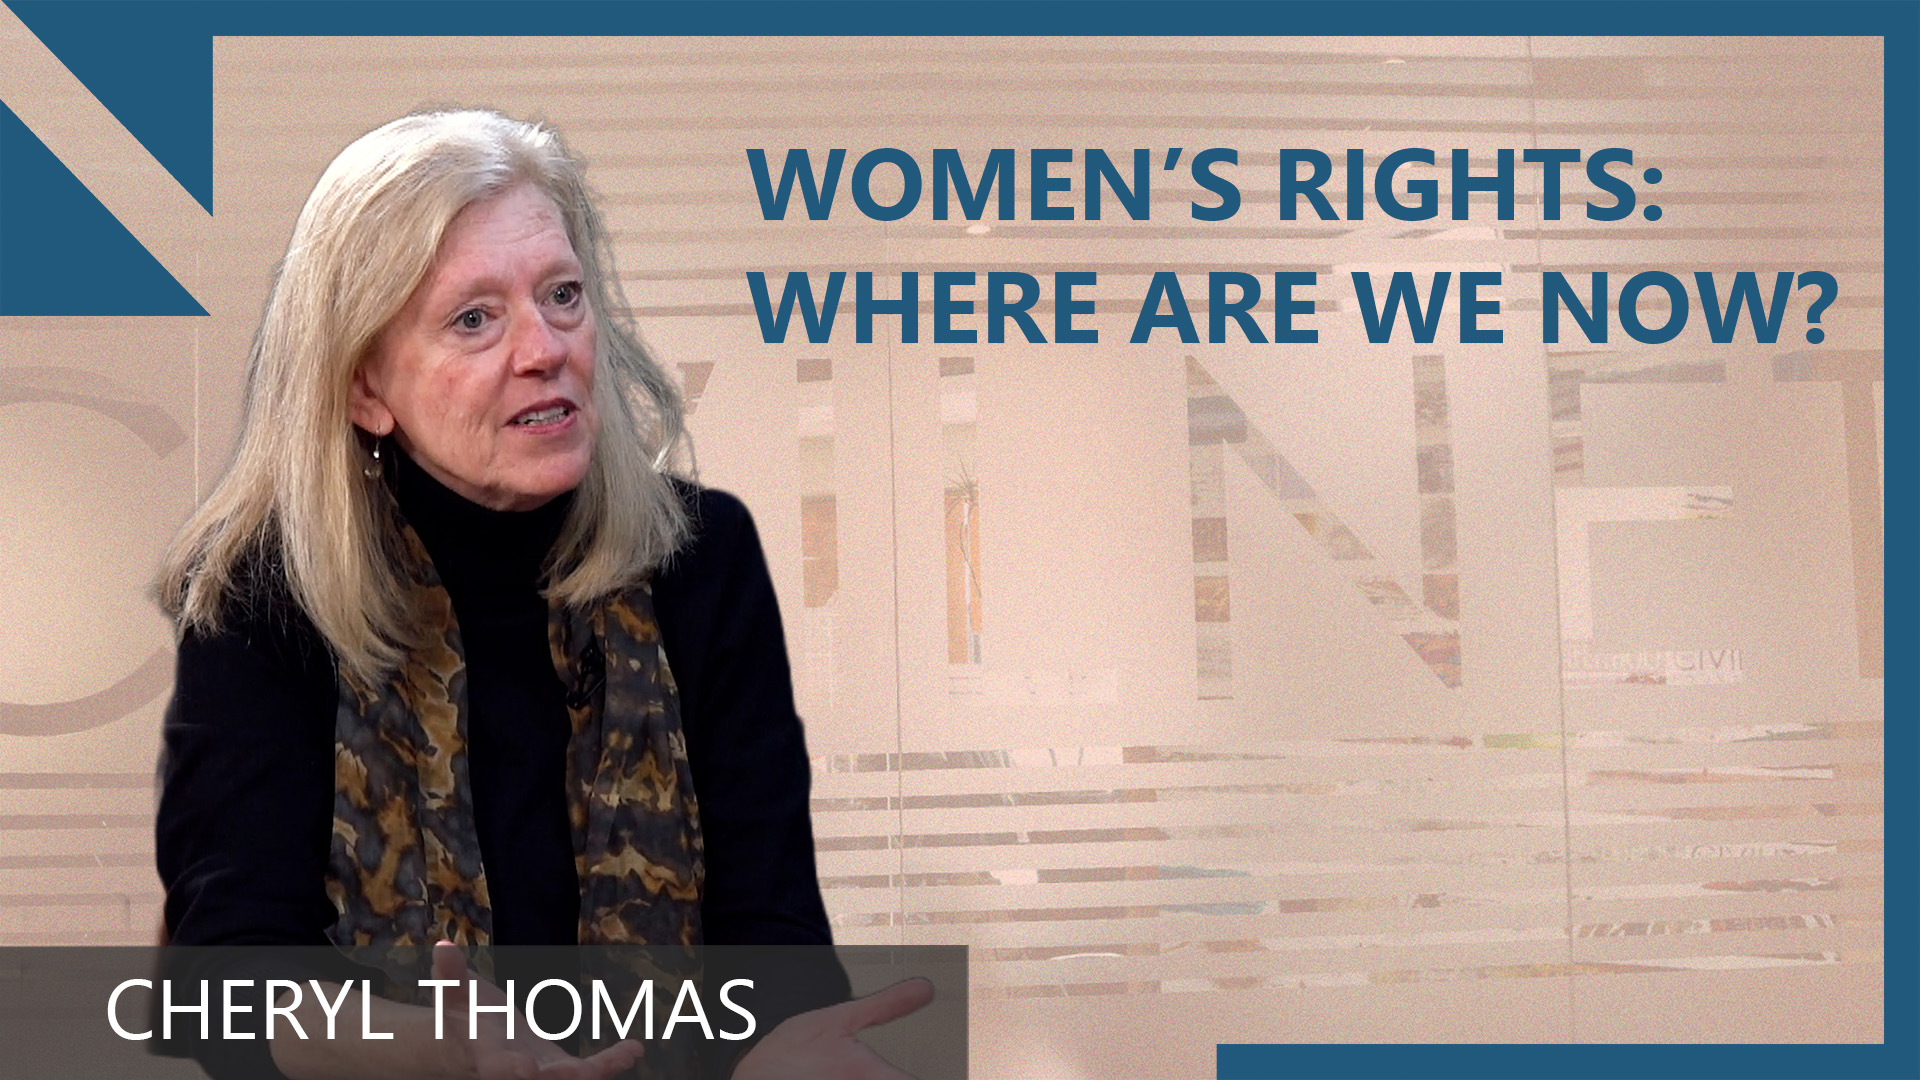 Cheryl Thomas: ‘Women’s rights are both facing steps backward and forward’